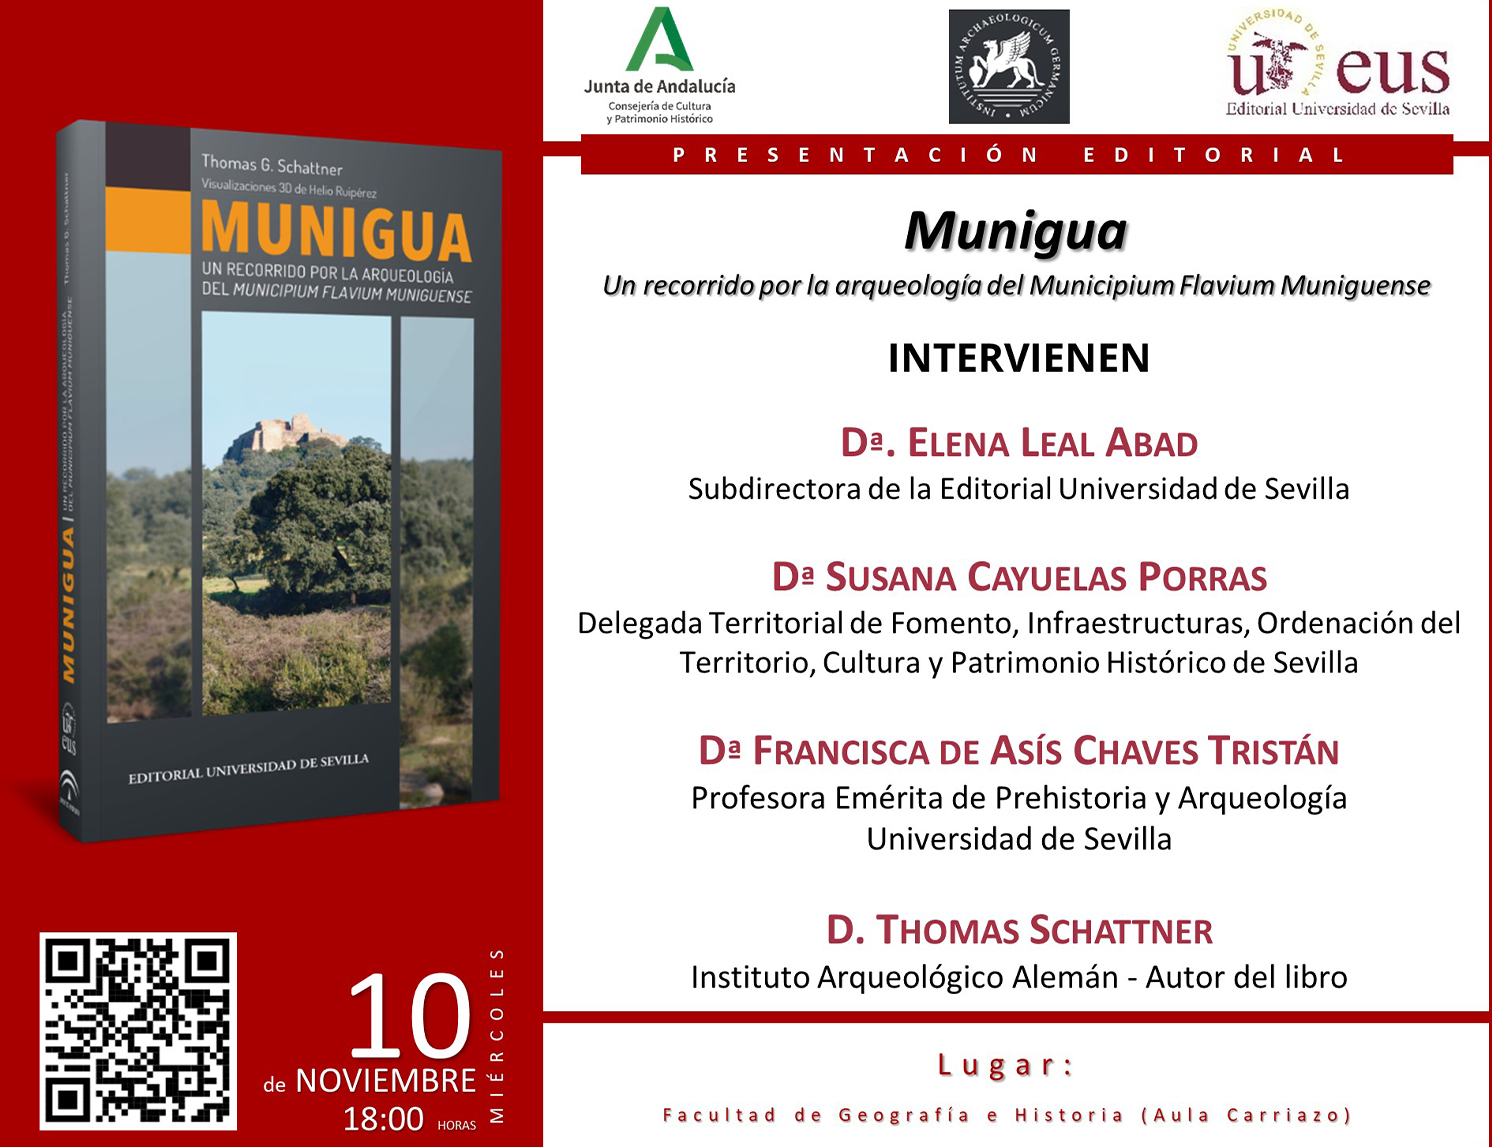 Munigua. Un recorrido por la arqueología dek Municipium Flavium Muniguense